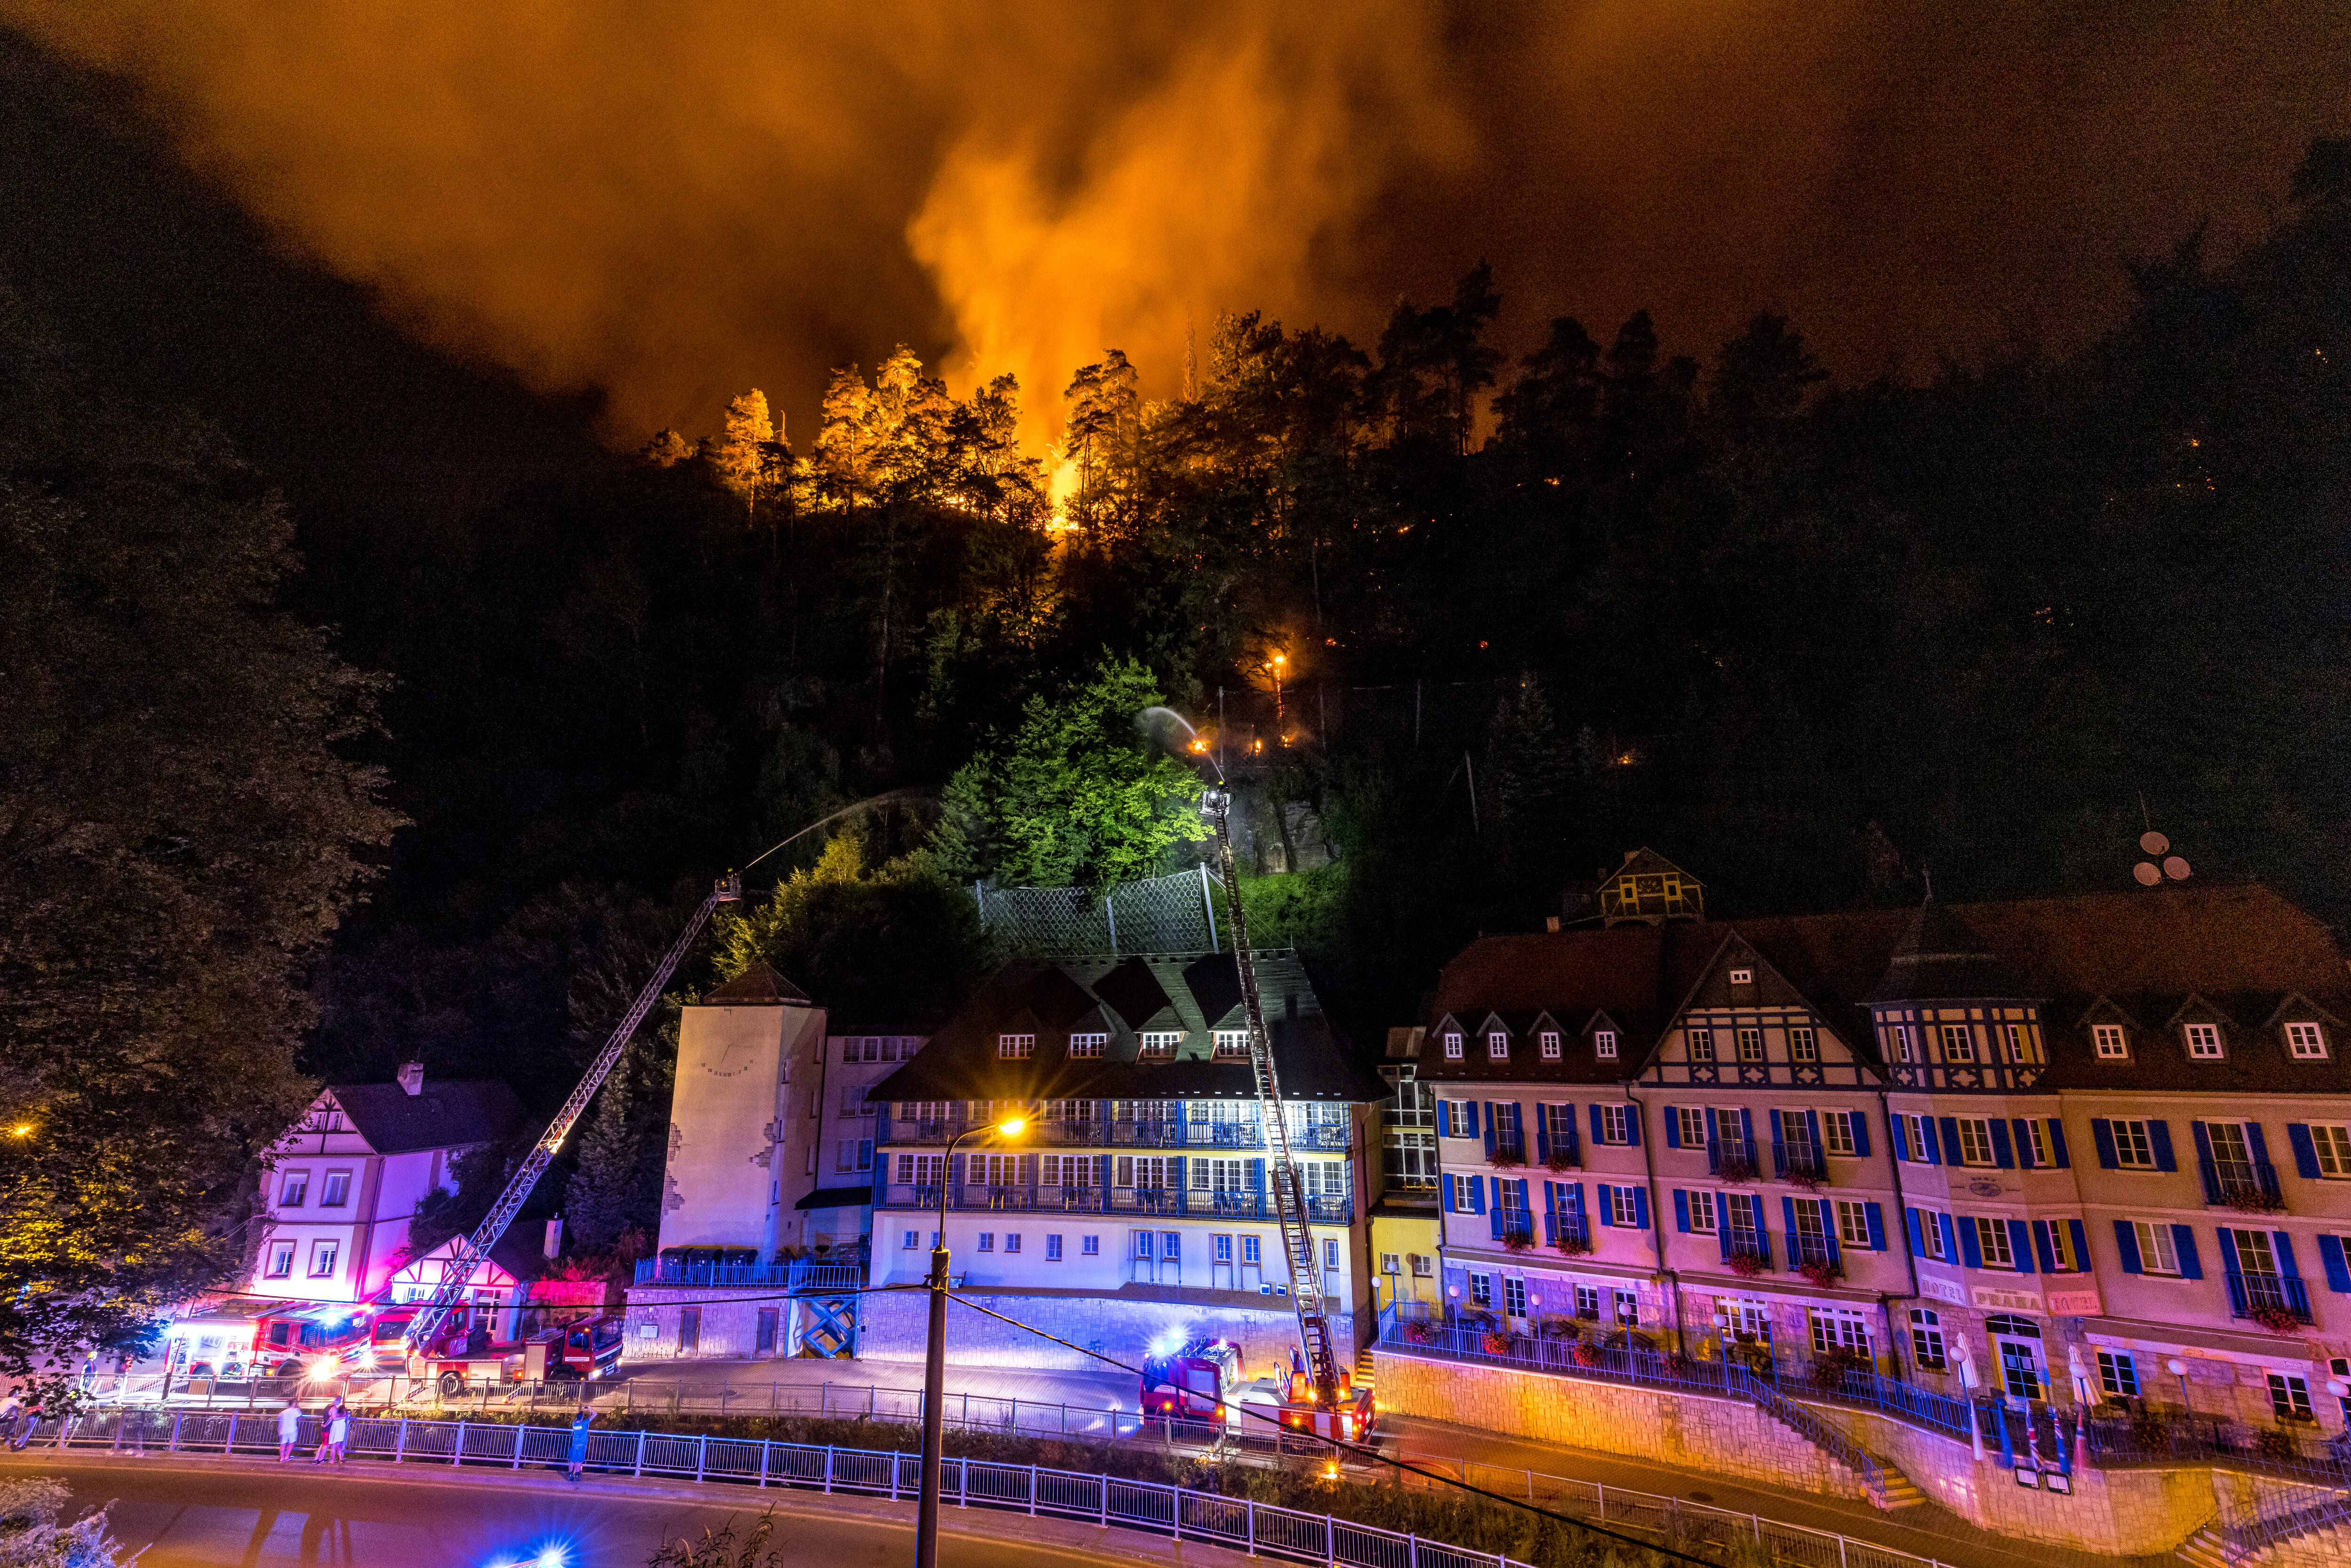 Urlaubsparadies in Flammen! Schwere Waldbrände toben in Österreich, auch Italien betroffen - Großeinsatz für die Einsatzkräfte